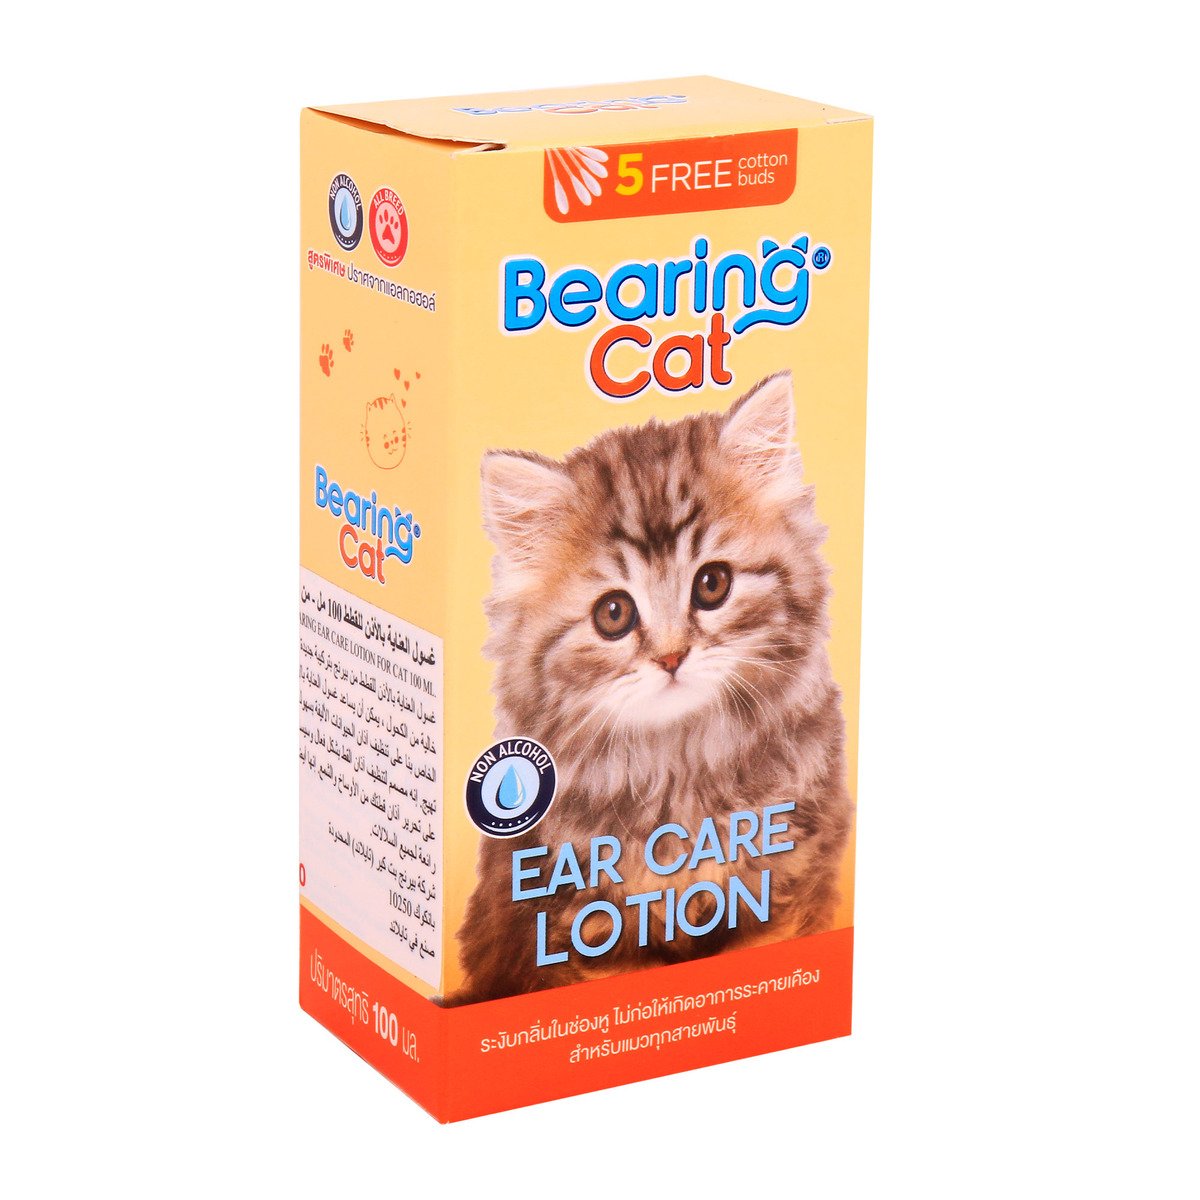 Bearing Cat Ear Care Lotion, 100 ml